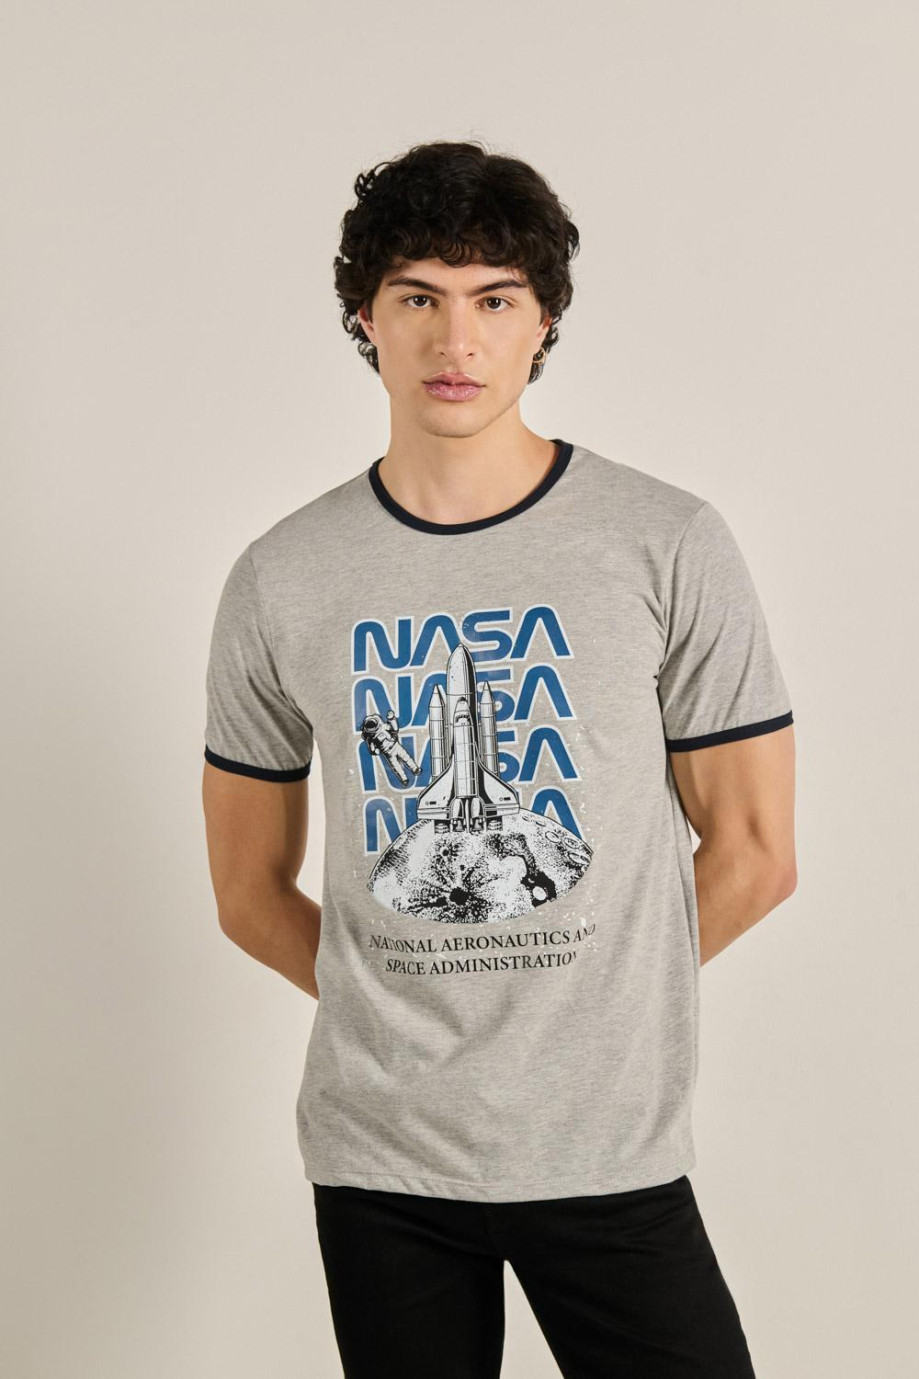 Camiseta unicolor con contrastes, arte de NASA y manga corta